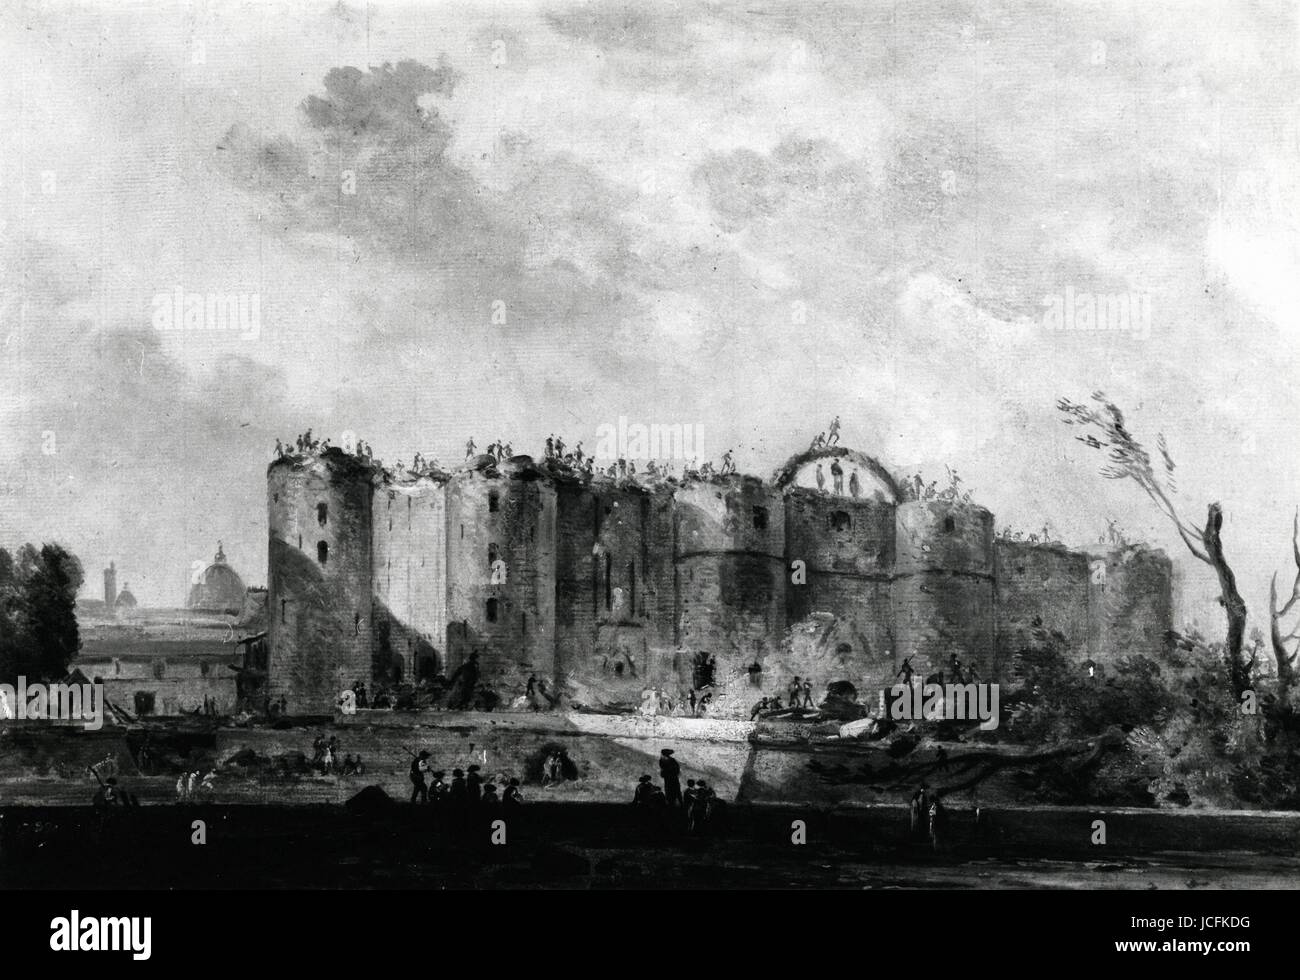 Die historische Festung oder genauer gesagt die Festung von Saint-Antoine, war eine Festung gebaut, um das aktuelle Quadrat der Festung in Paris zu ersetzen. Es wa vollständig zerstört, nach der Einnahme der Bastille 14. Juli 1789 Stockfoto